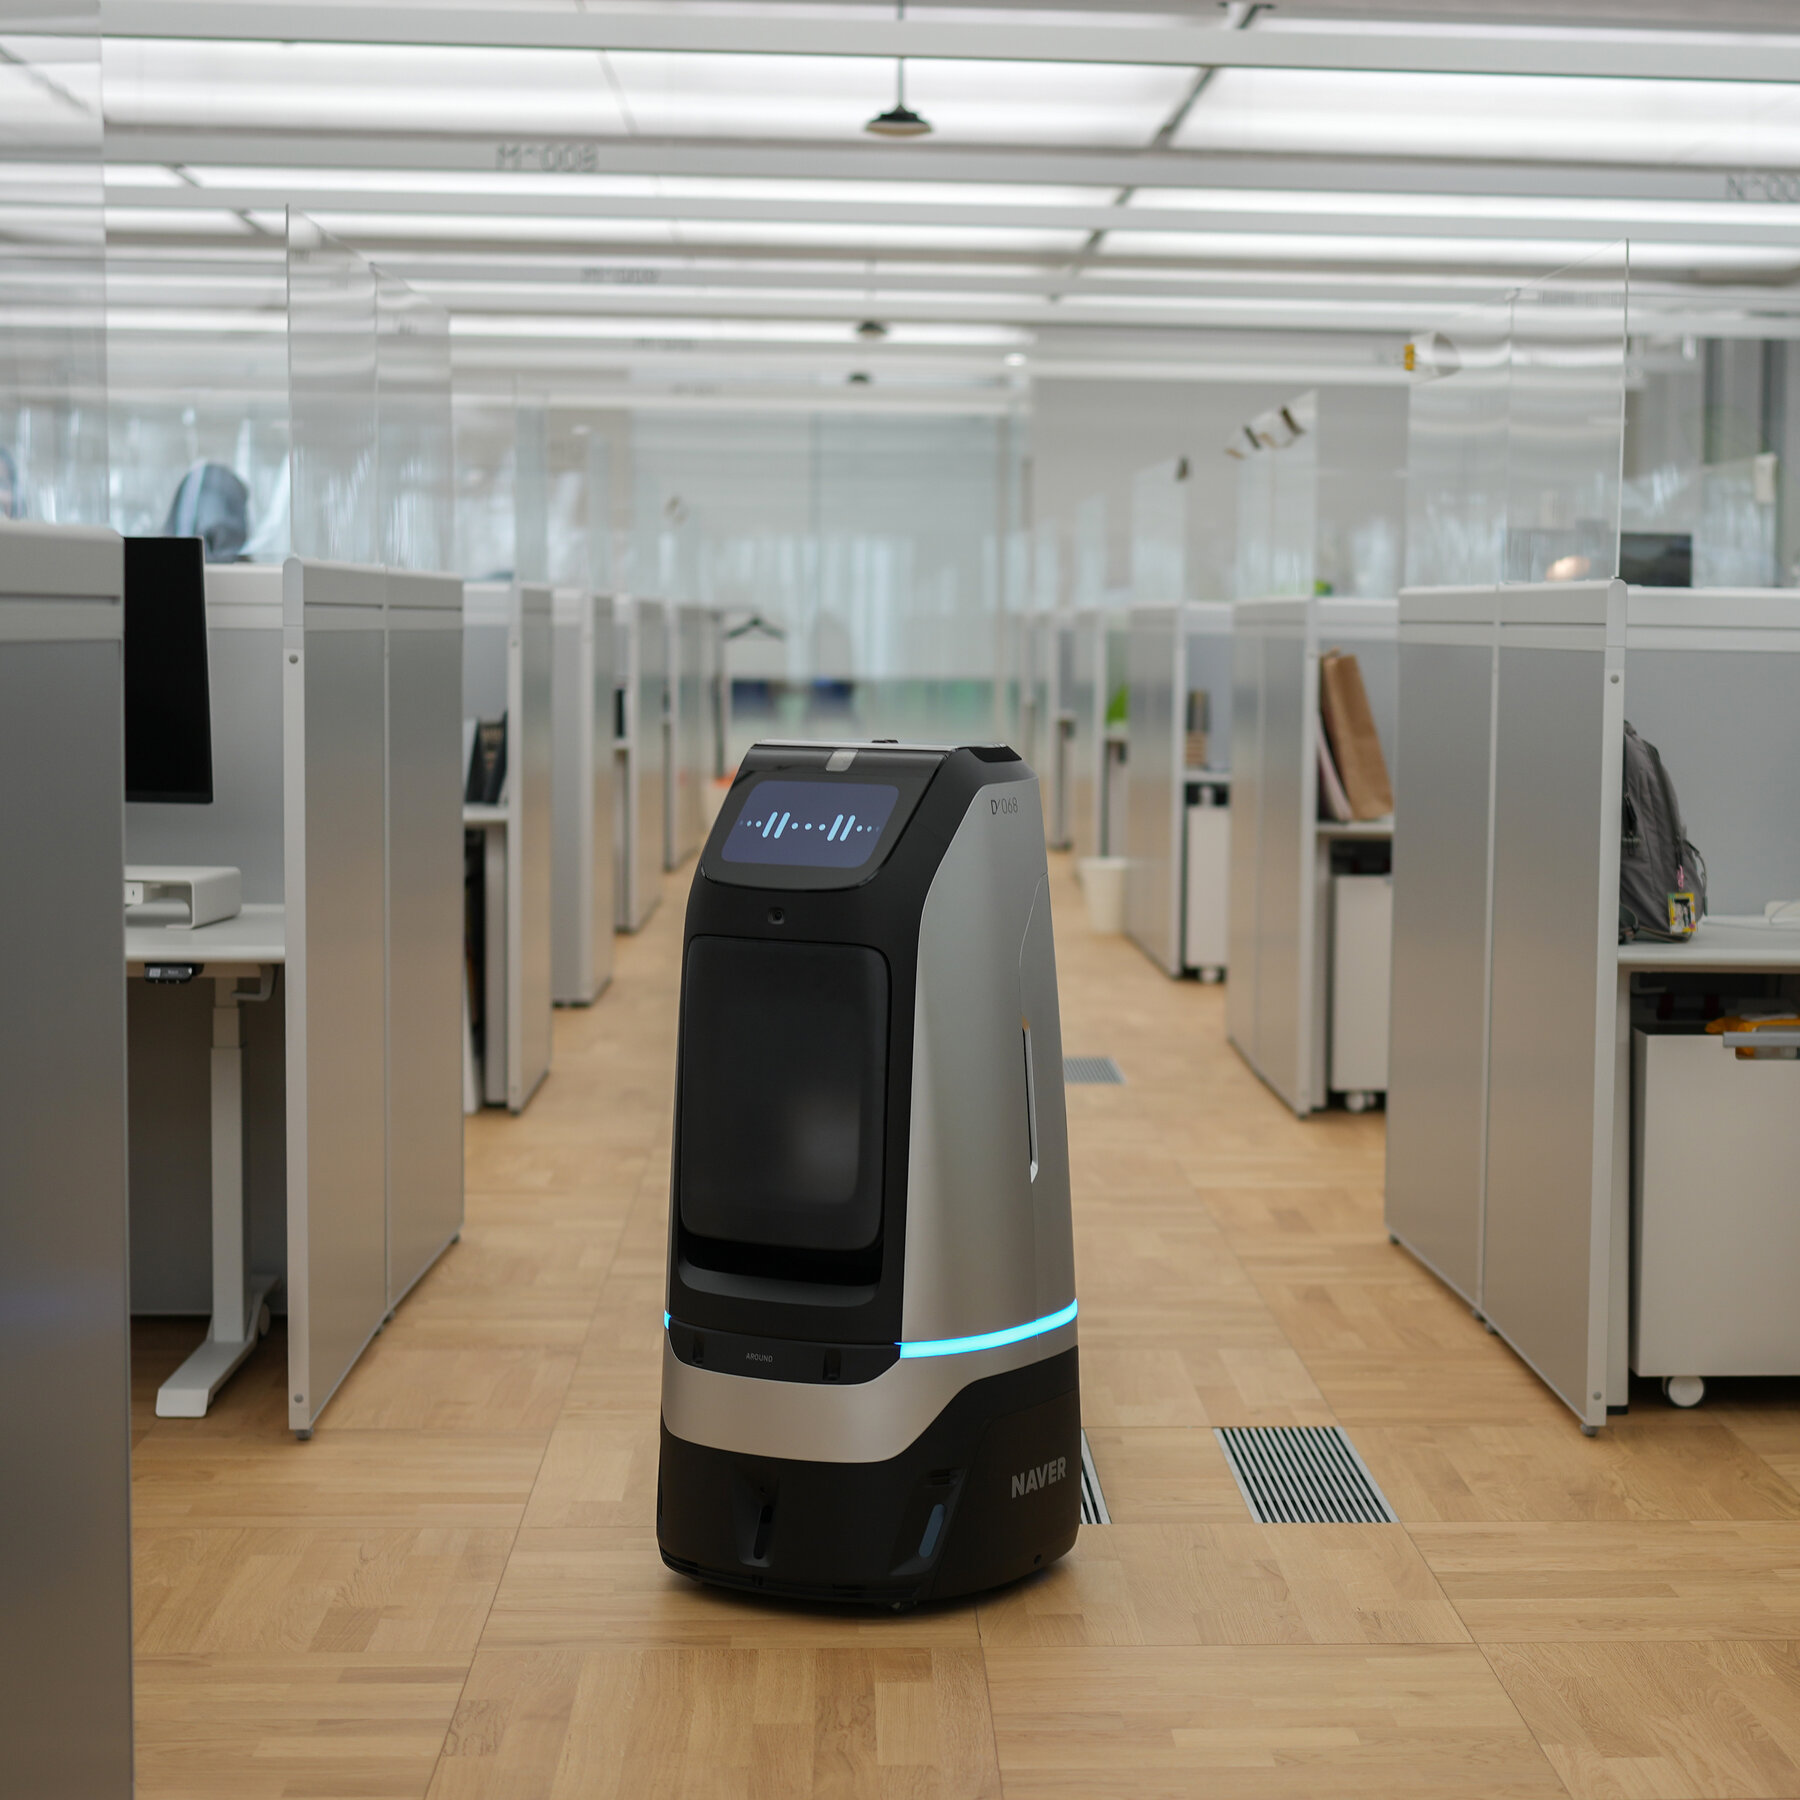 Футуристический офис на 5 тыс. человек и 100 роботов-сотрудников